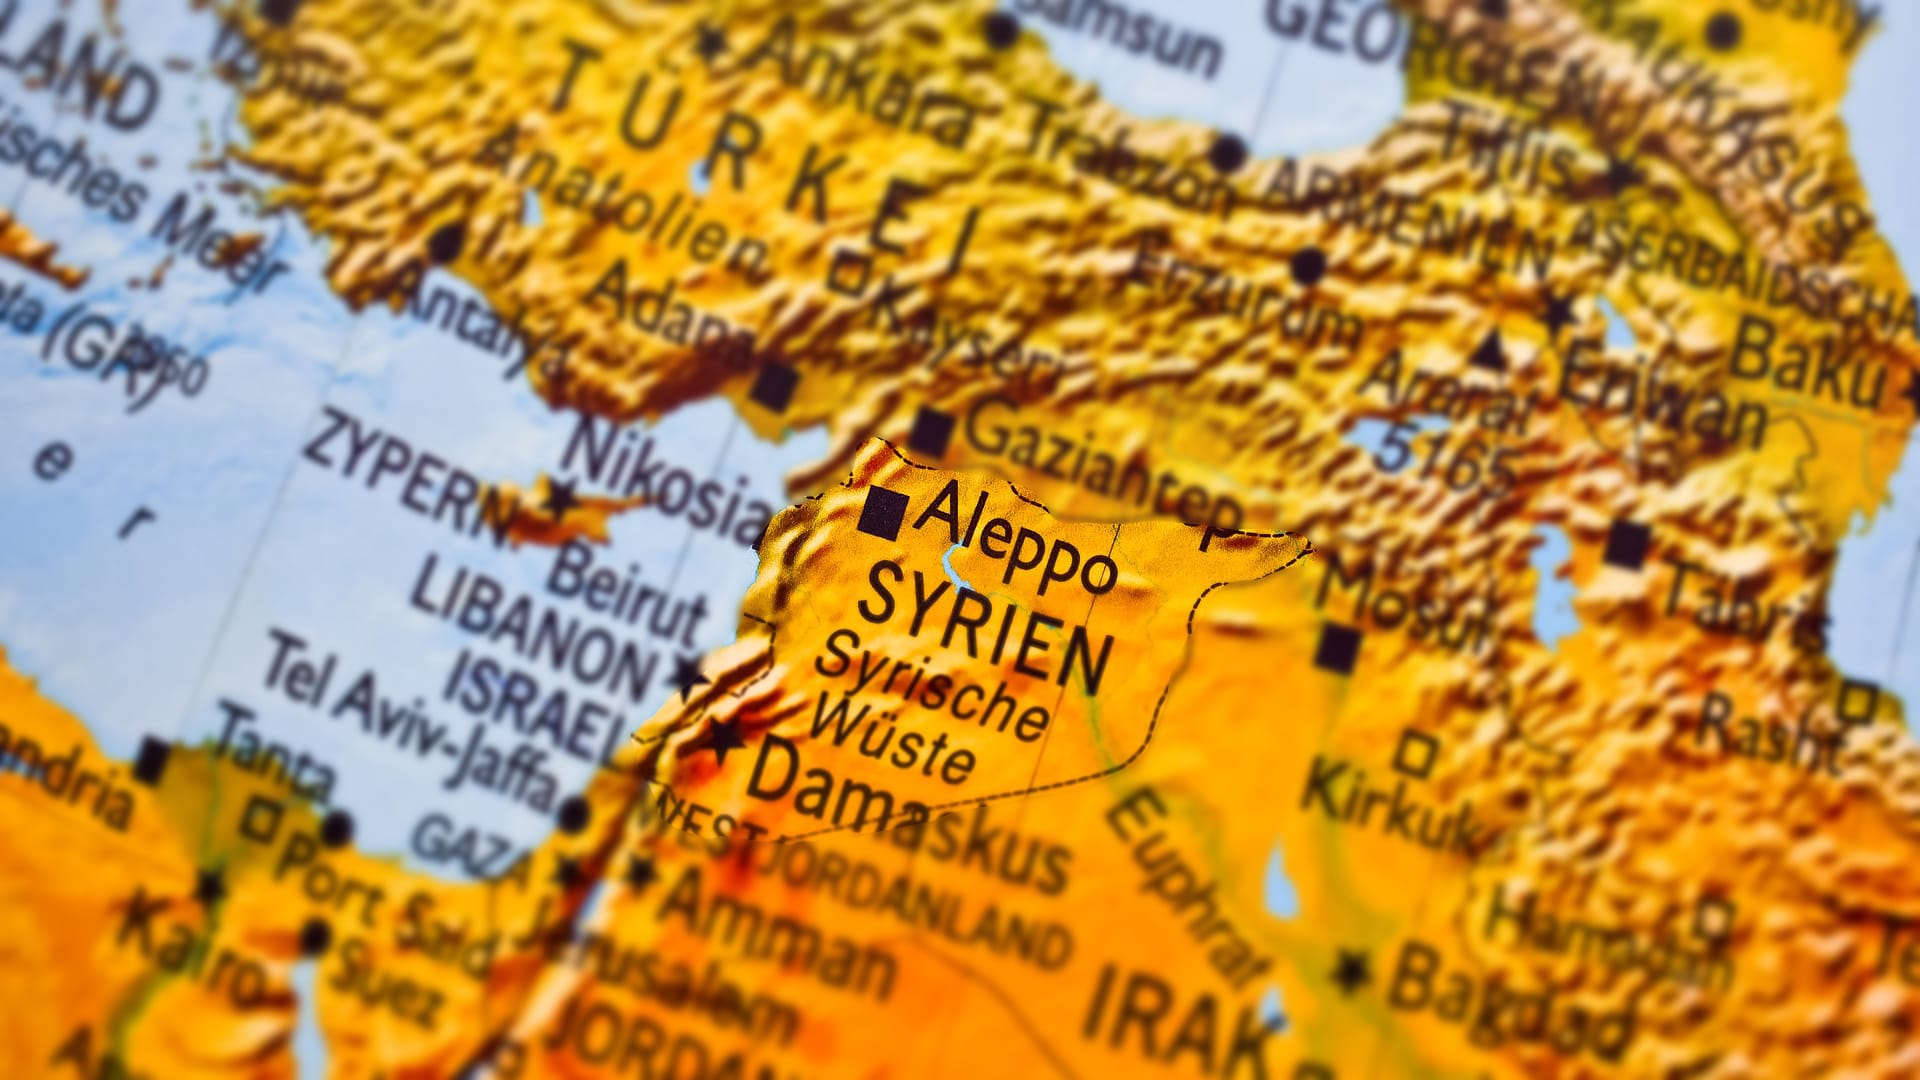 Syrien rückt 2020 in den Fokus des Gebetstages für verfolgte Glaubengeschwister